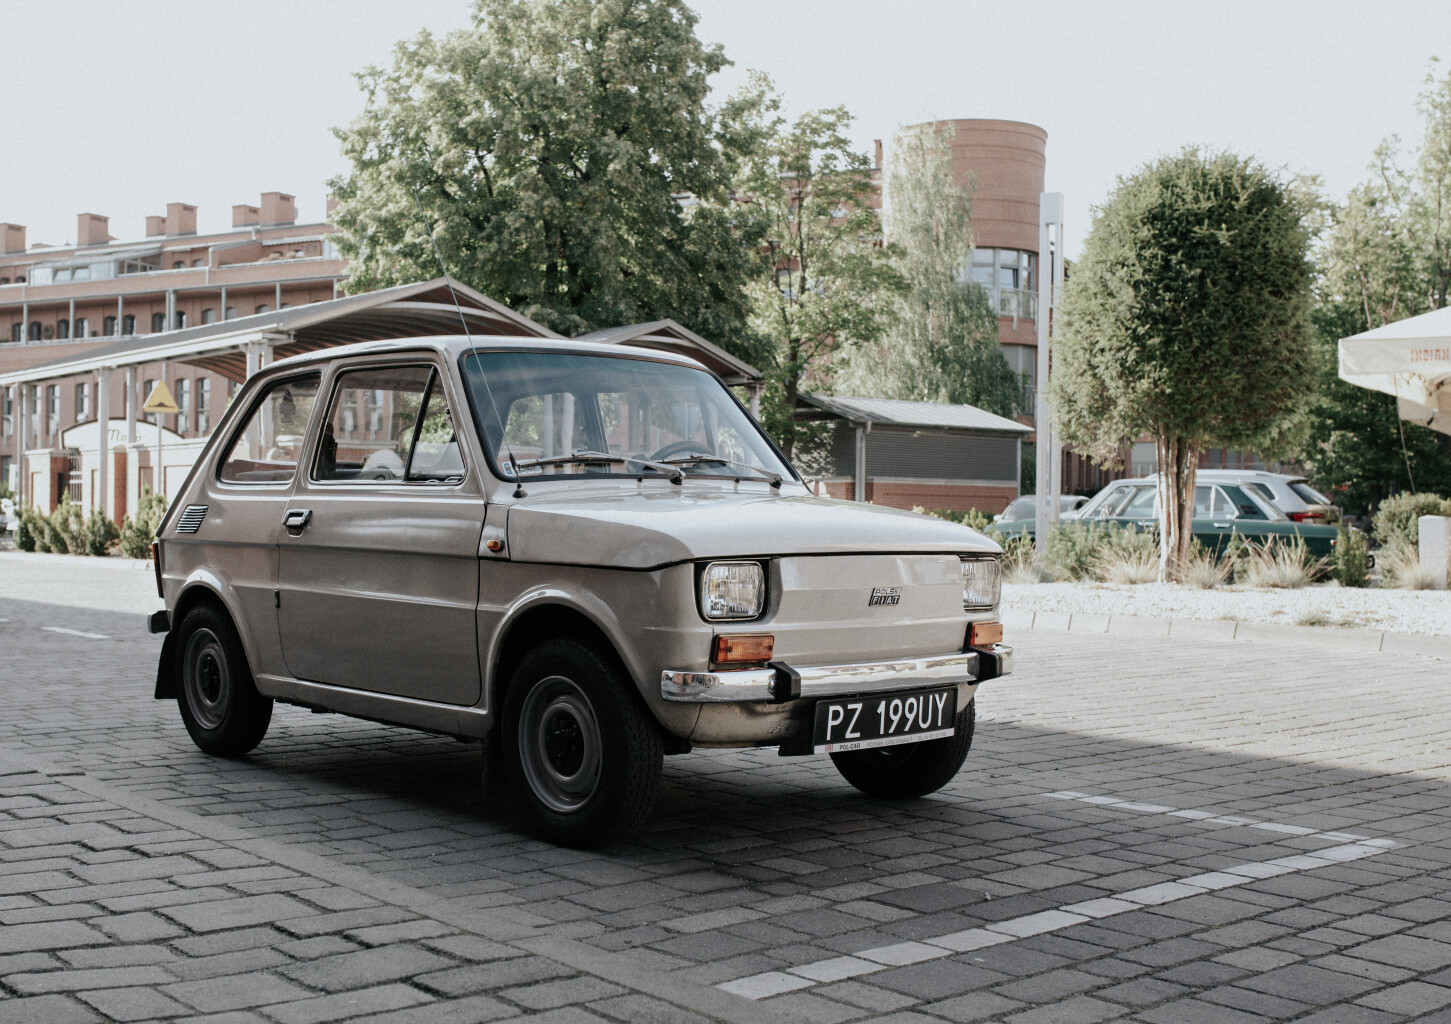 Poprowadź "Malucha" - Fiat 126p (60 minut) | Poznań (okolice)